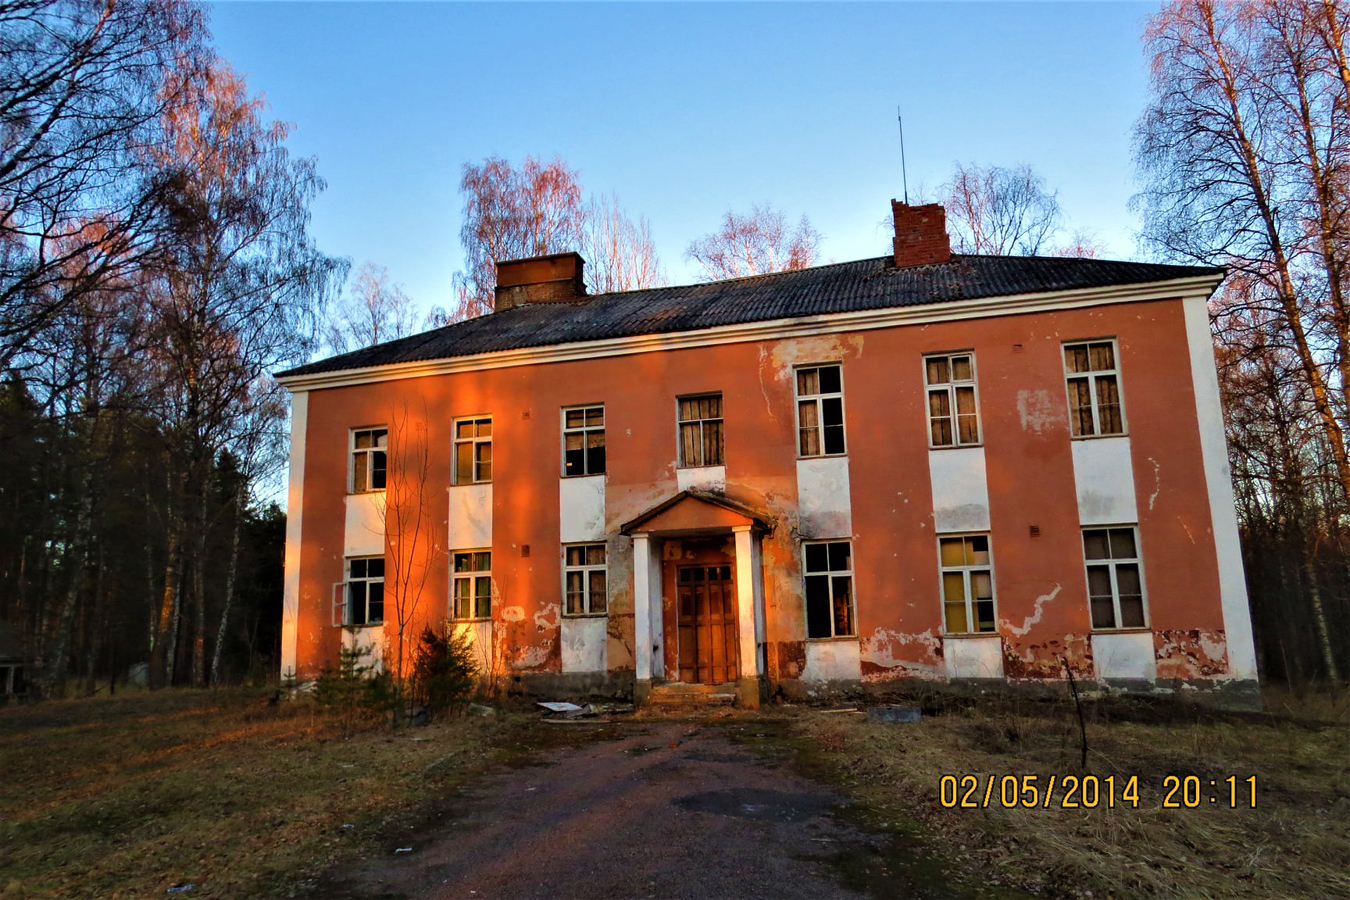 May 2, 2014. Uusikylä. Former Popular School